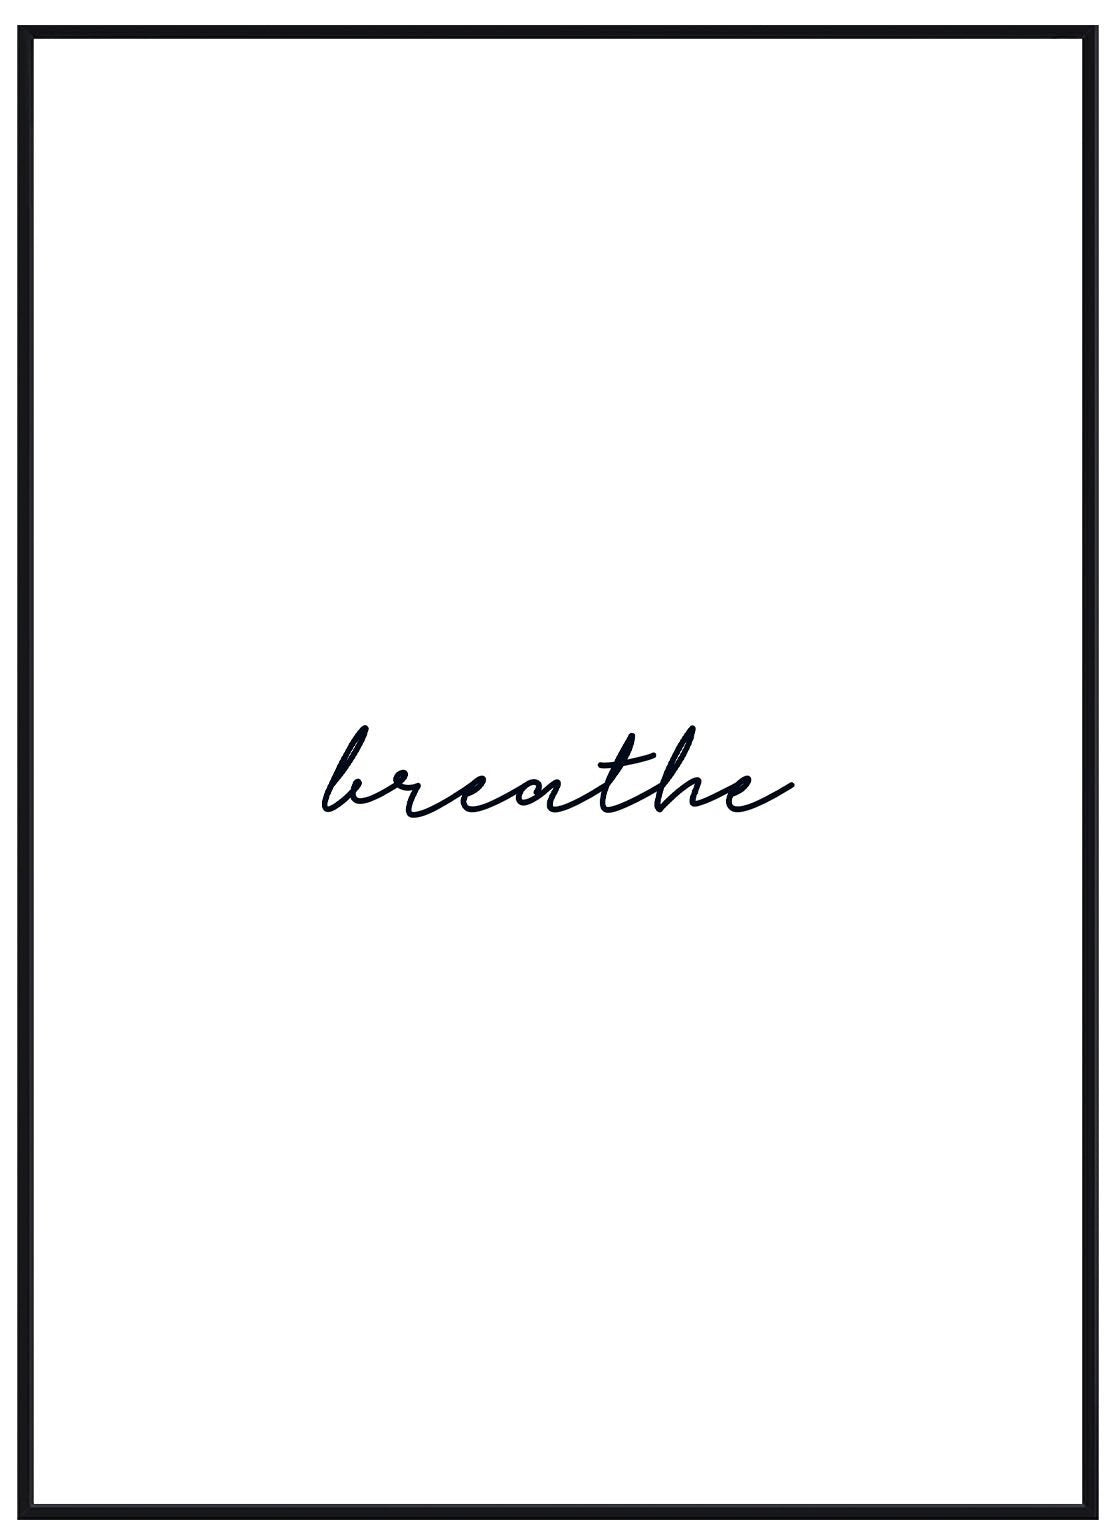 Breathe - Avemfactory